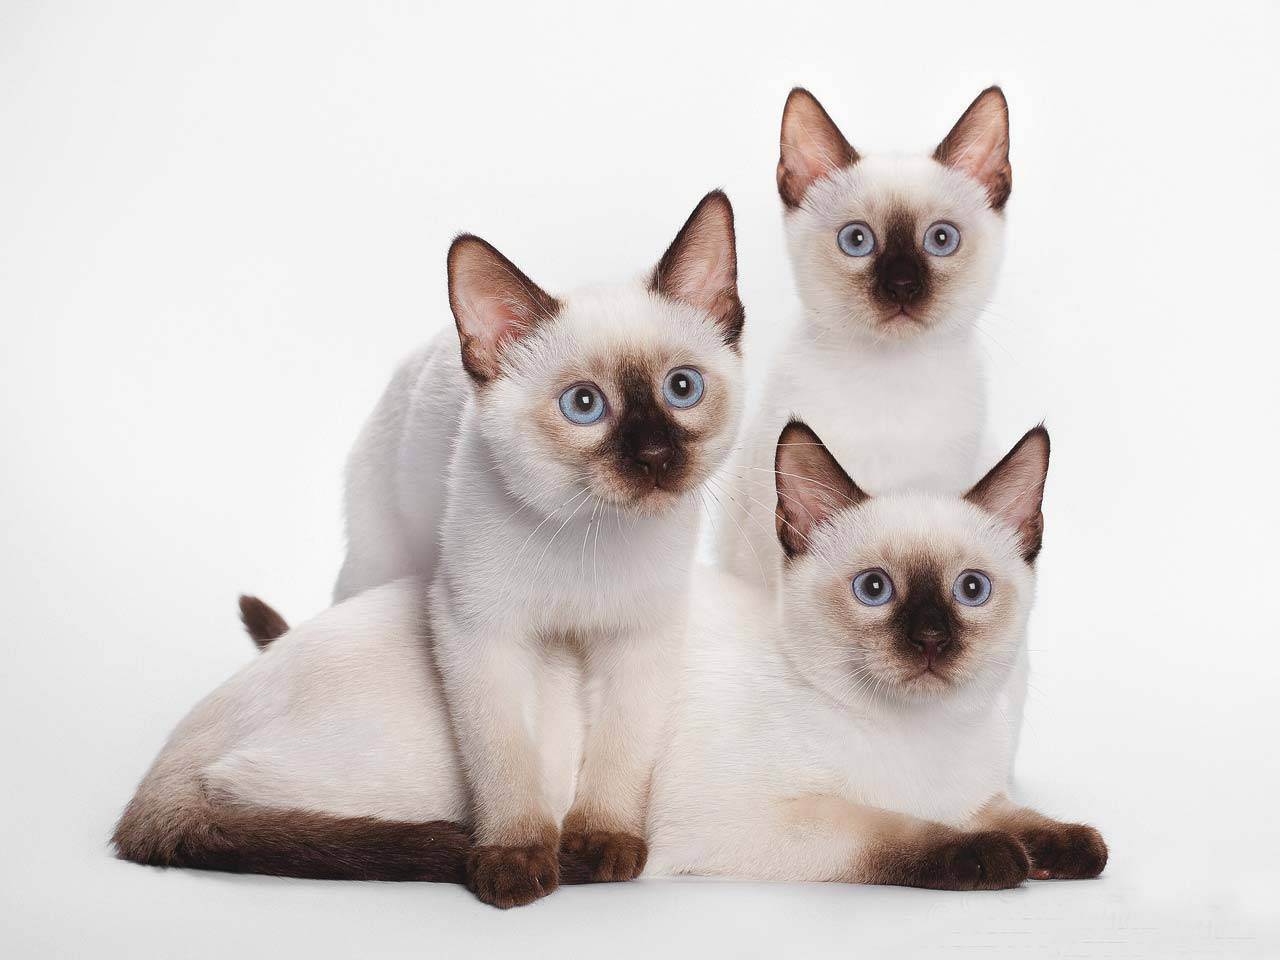 Тайская кошка - описание, стандарт, характер - kisa.su